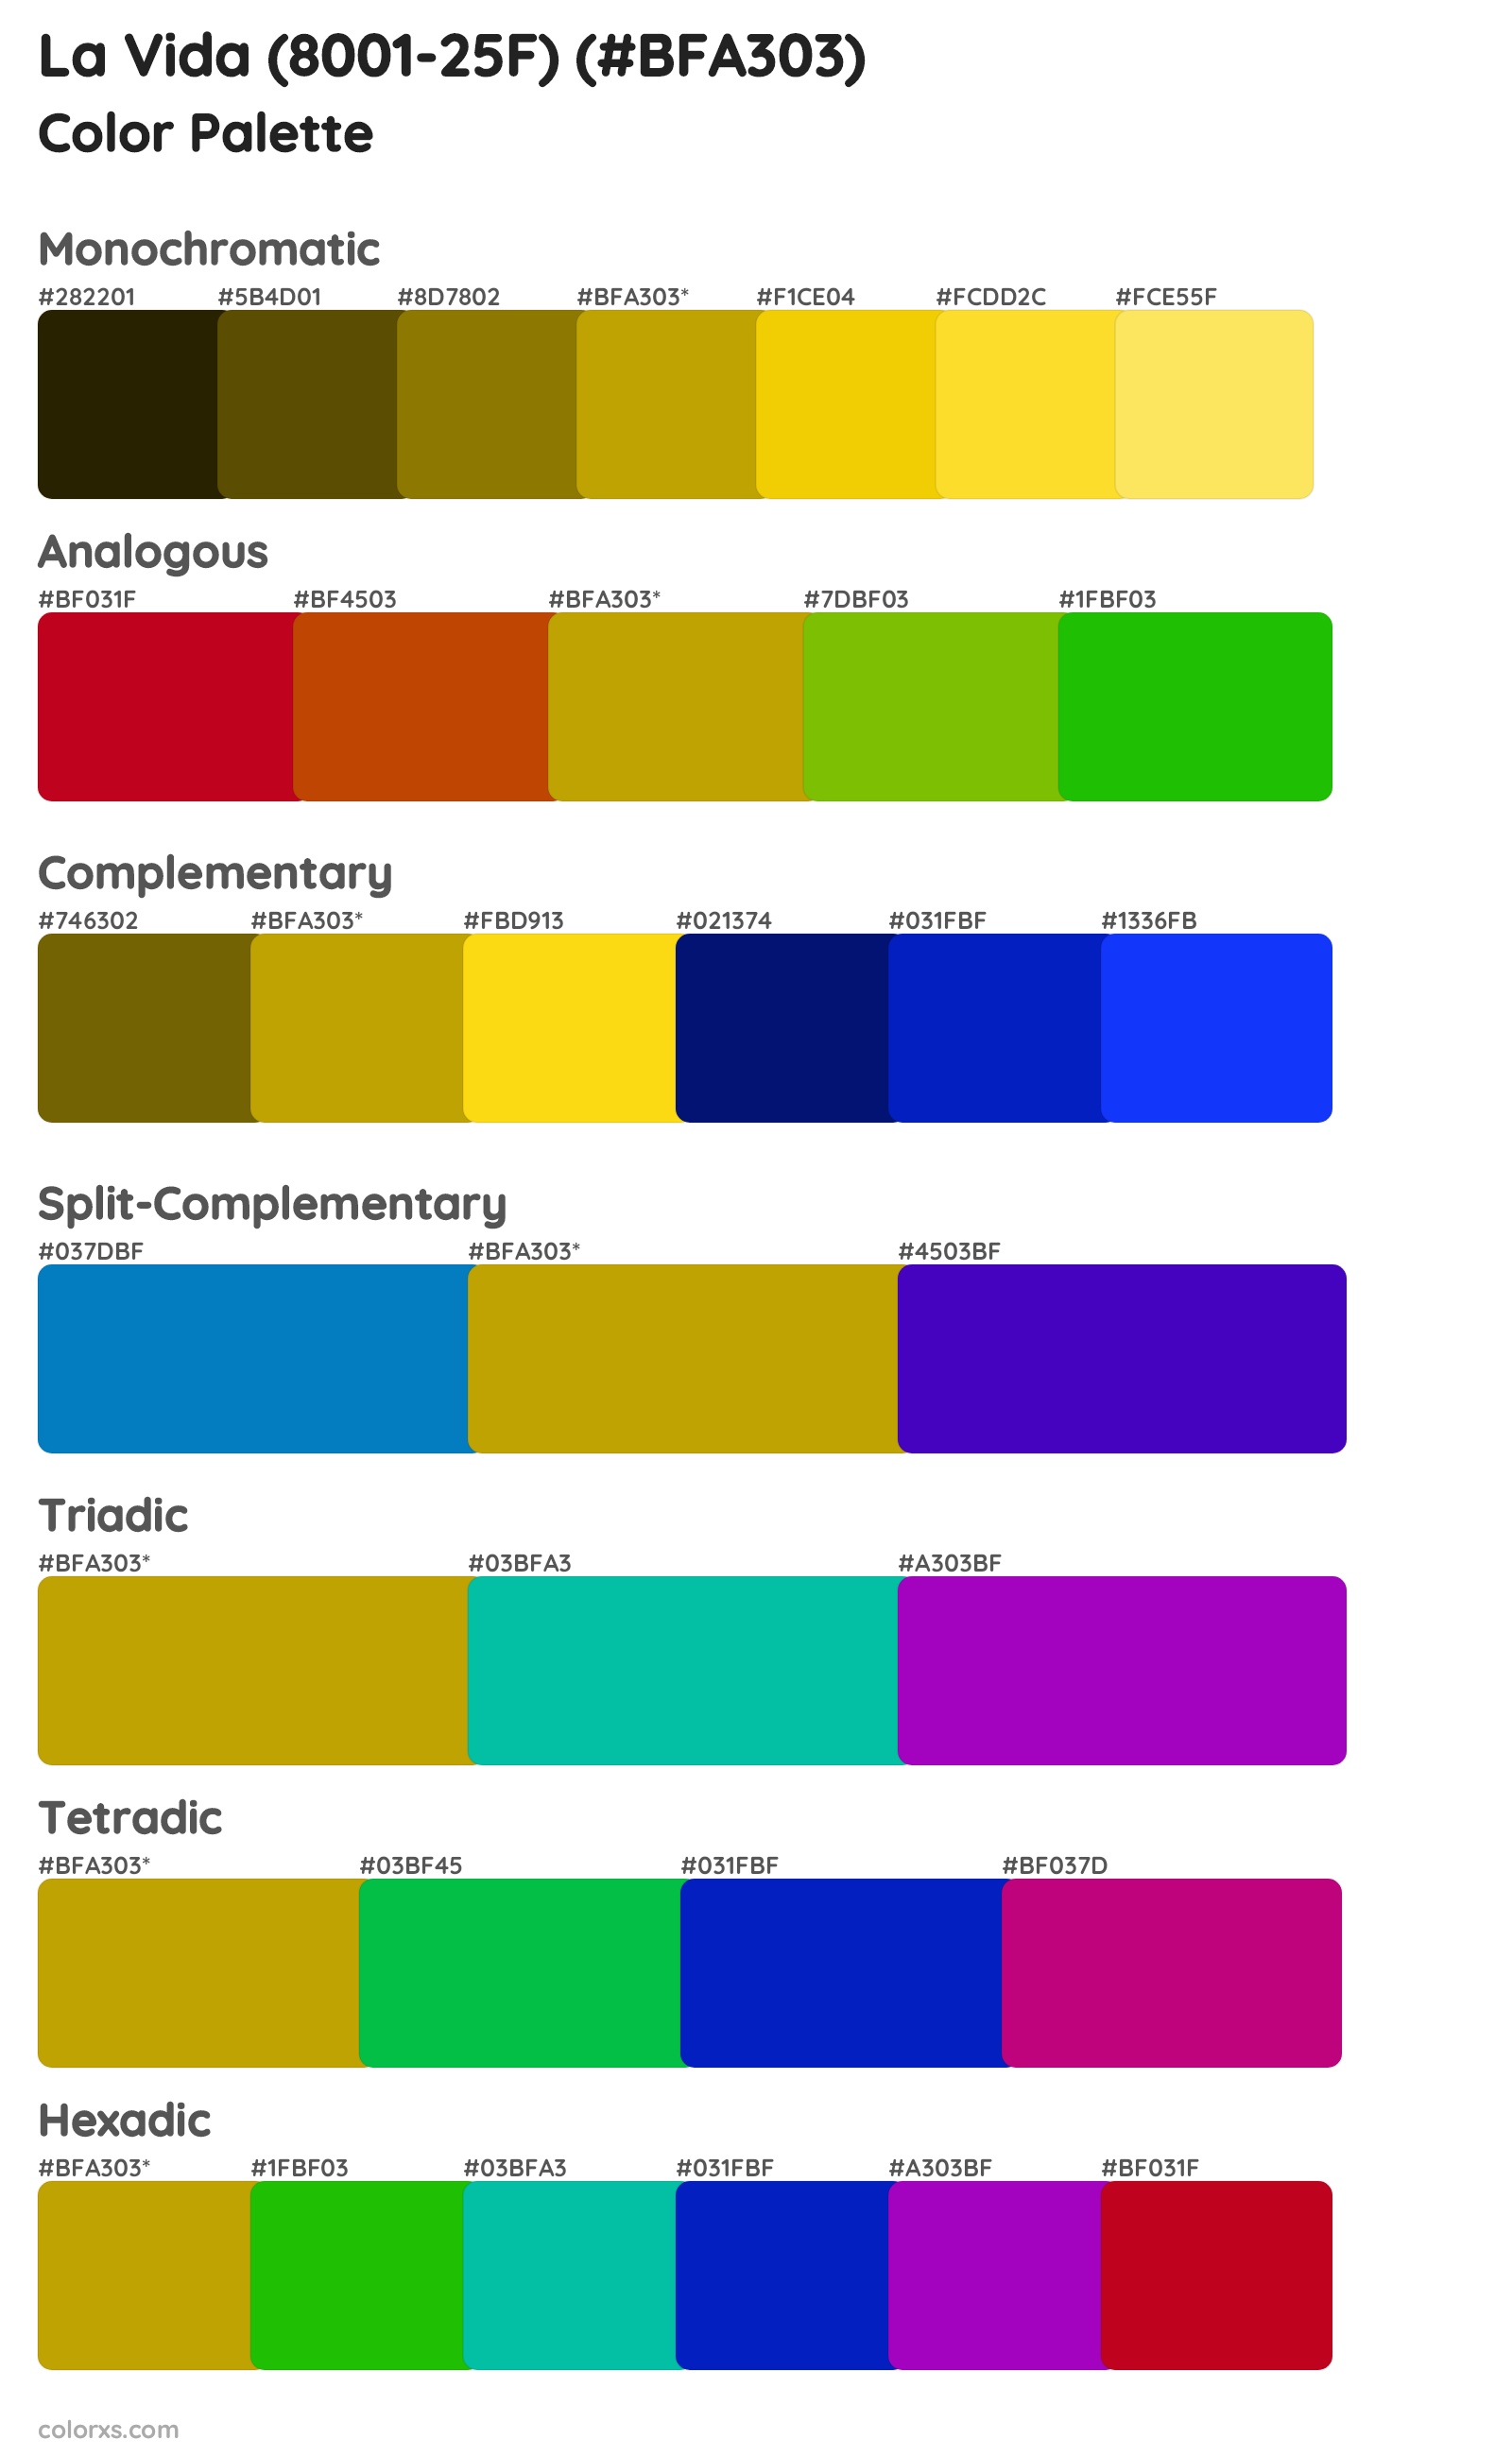 La Vida (8001-25F) Color Scheme Palettes